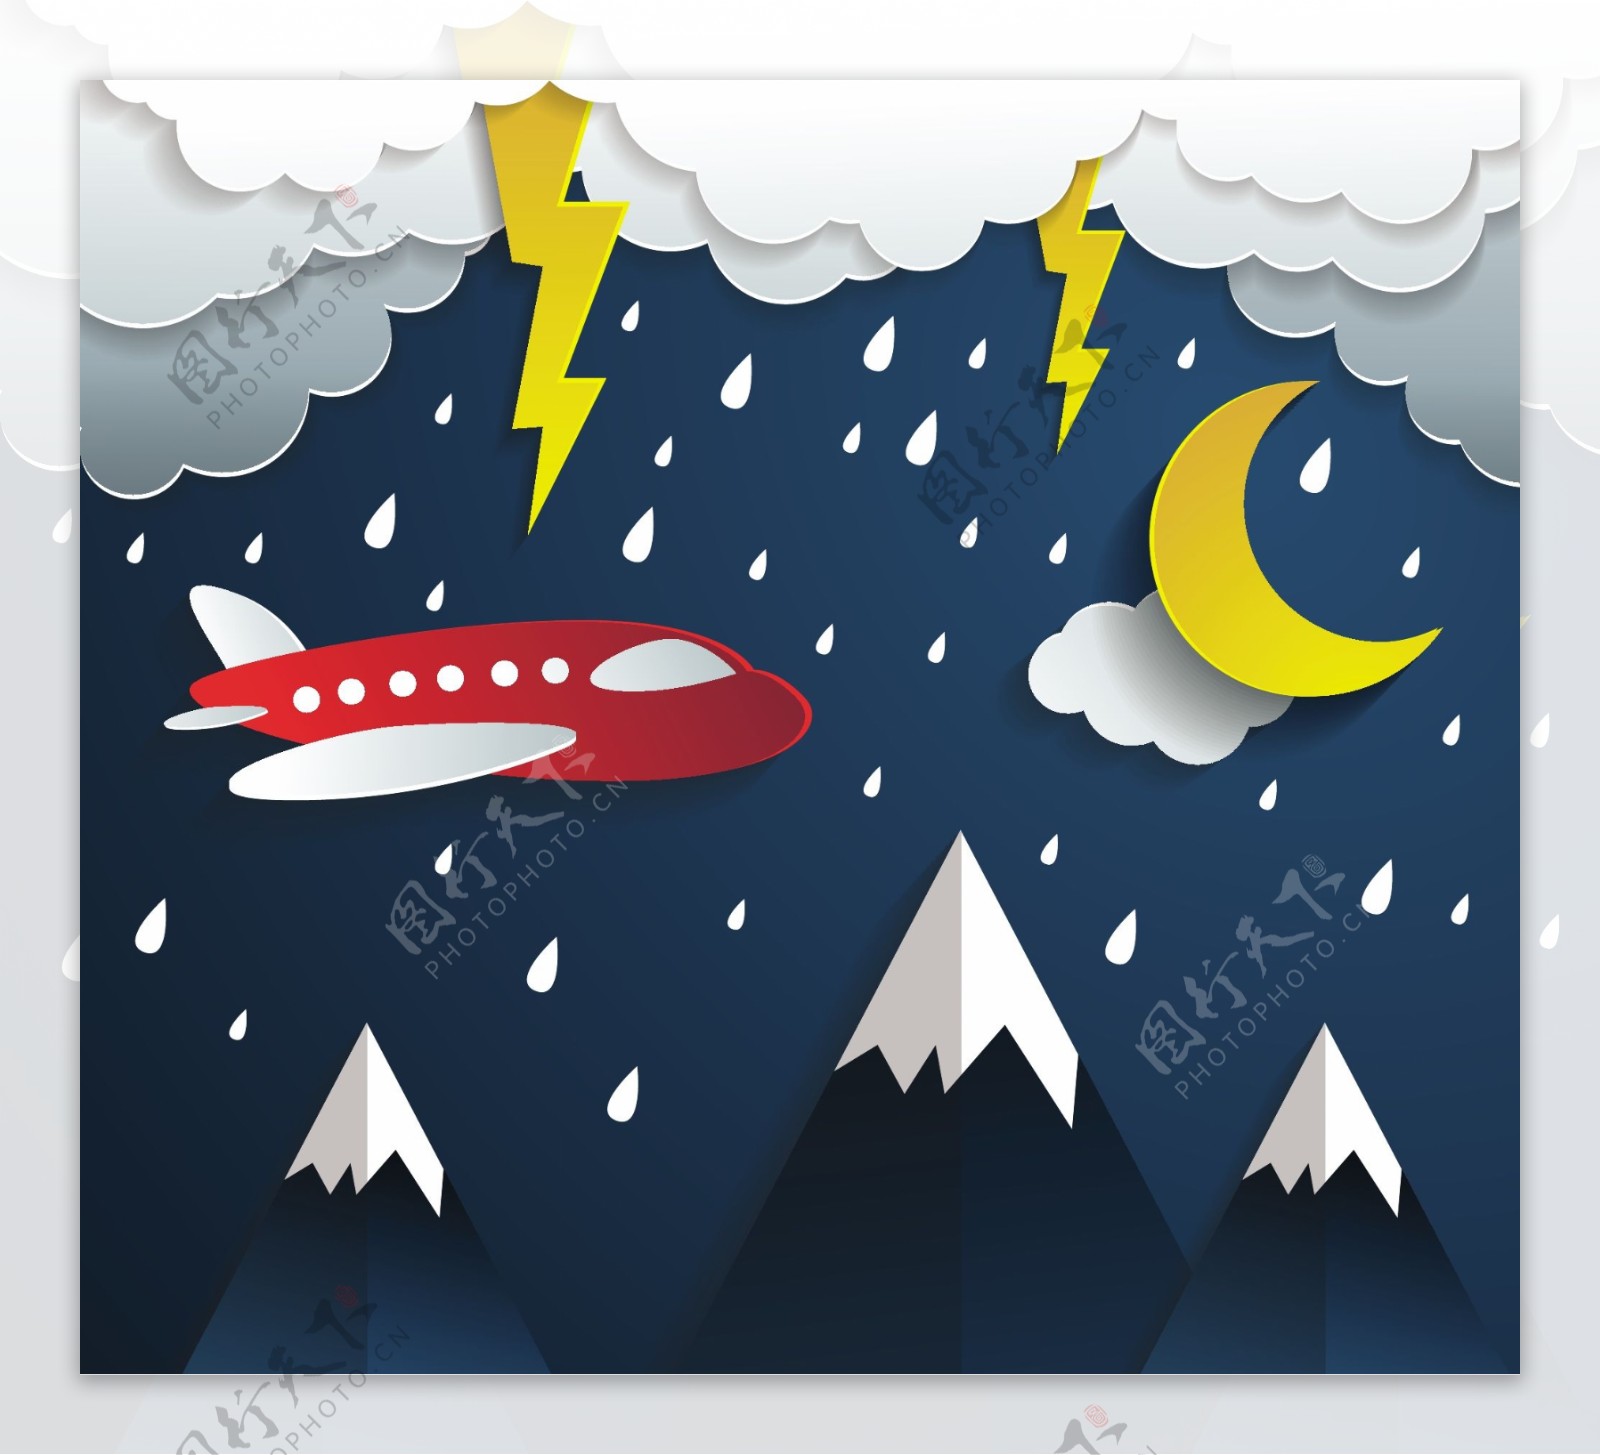 卡通夜晚在雨中飞行的飞机矢量素材